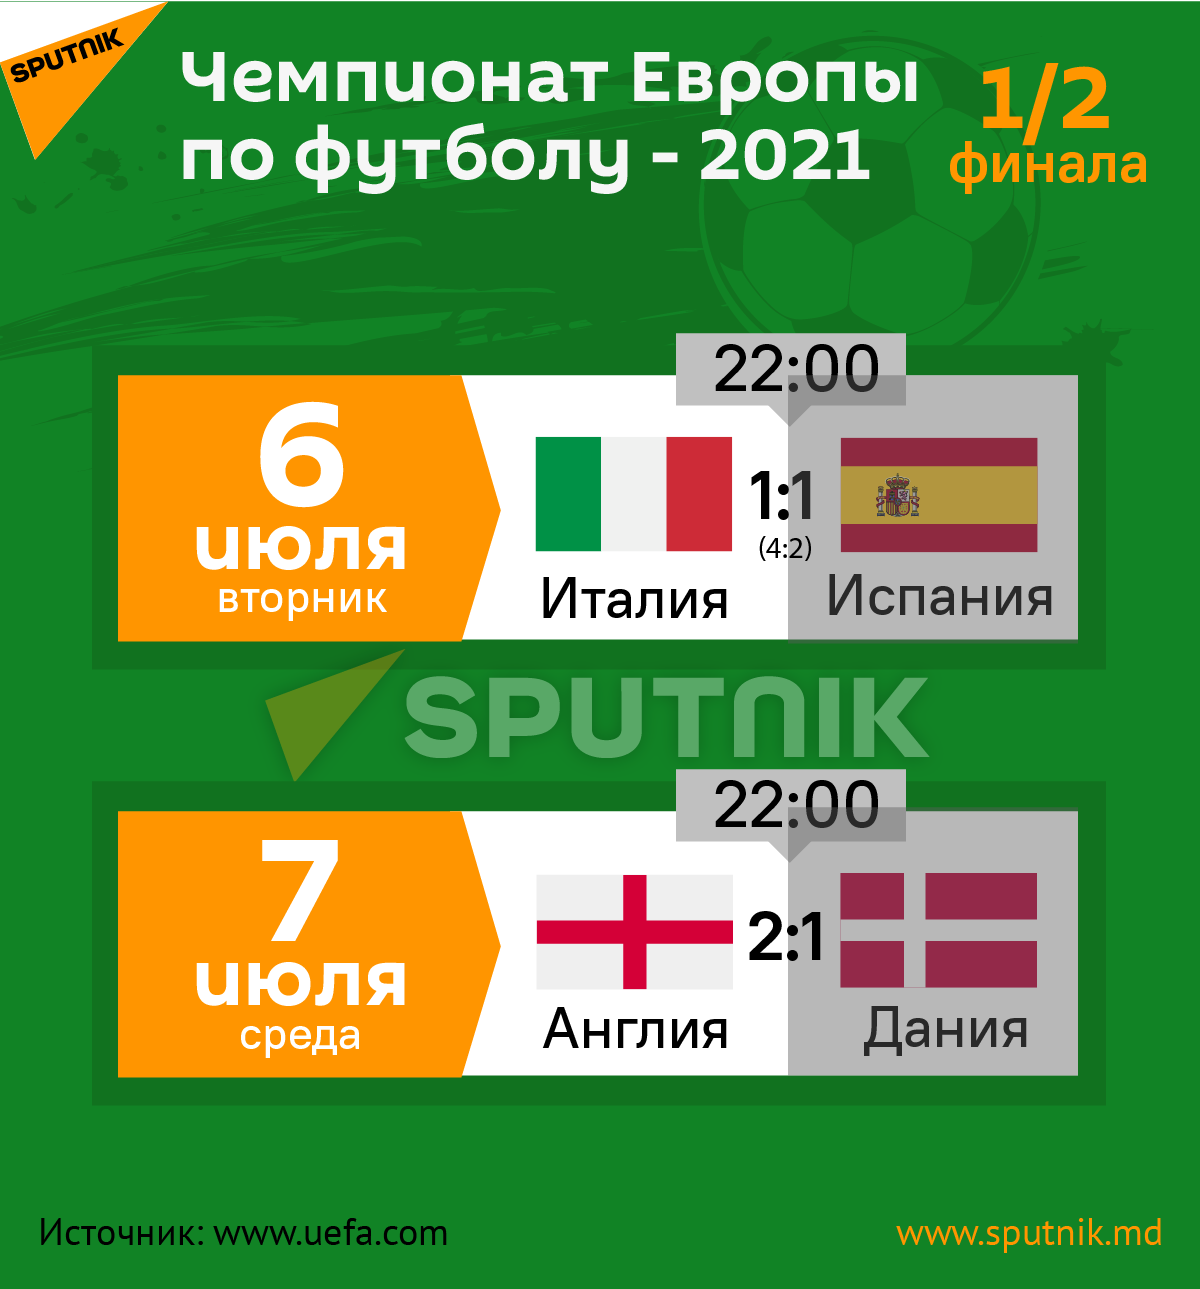 Чемпионат Европы по футболу - 2021-1/2 - Sputnik Молдова, 1920, 05.07.2021